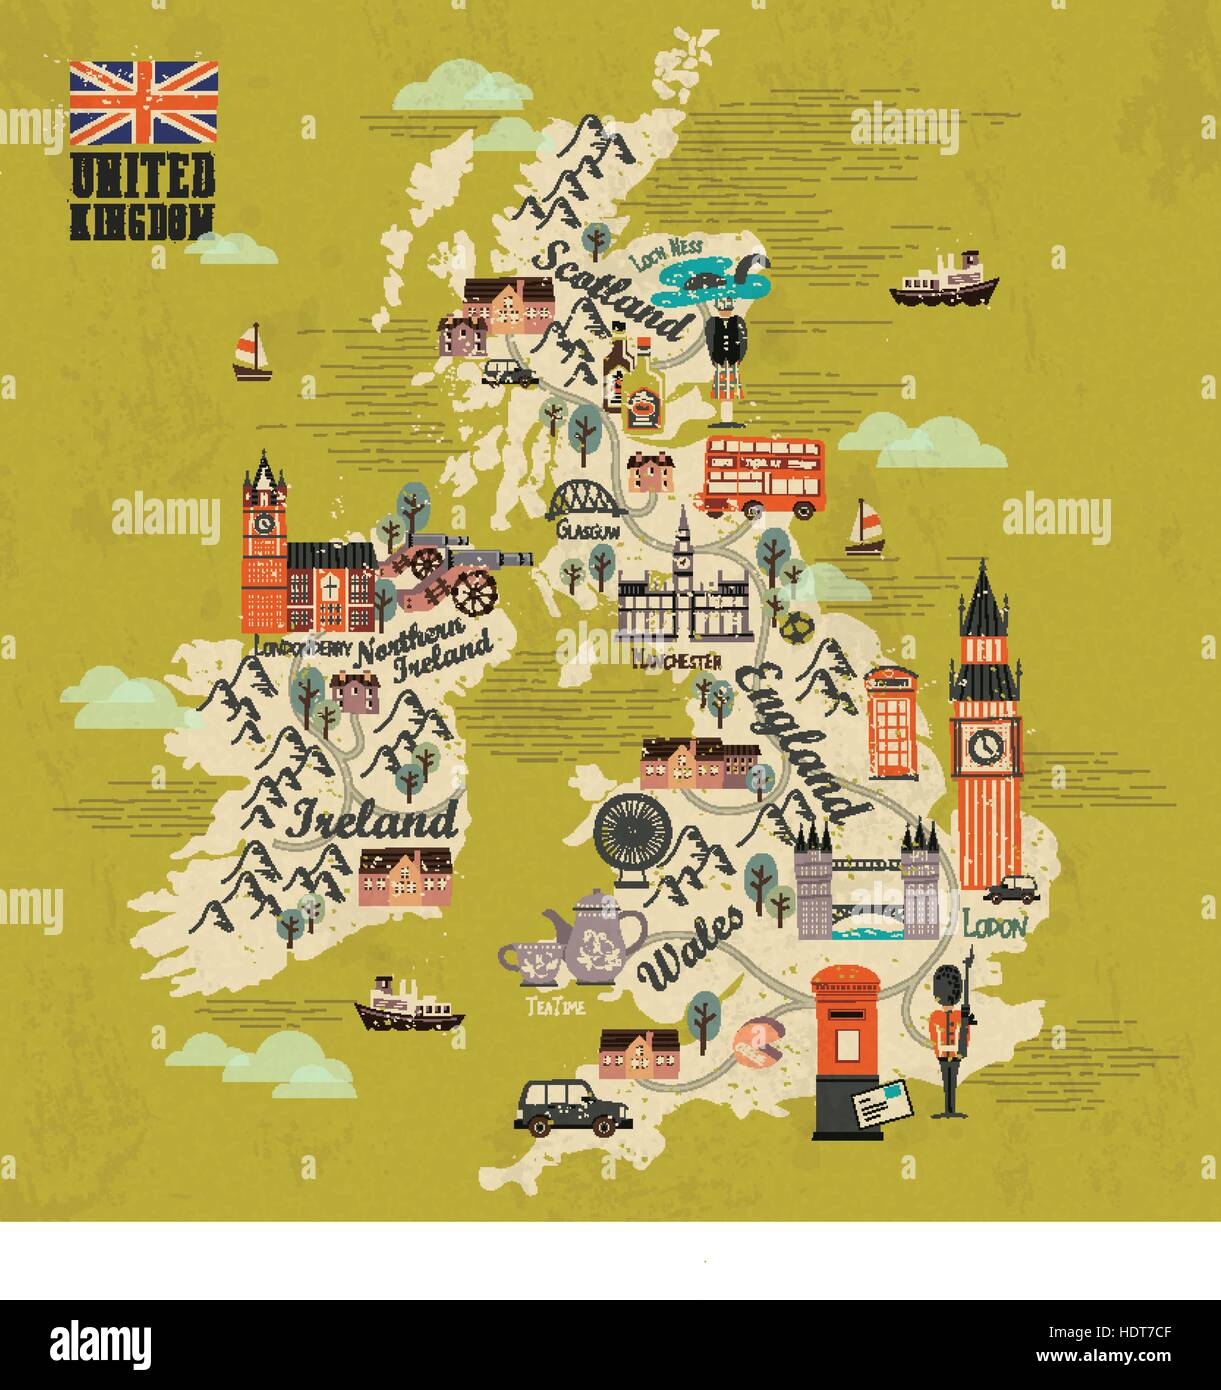 Royaume-uni la carte de voyage avec des attractions en modèle plat Illustration de Vecteur